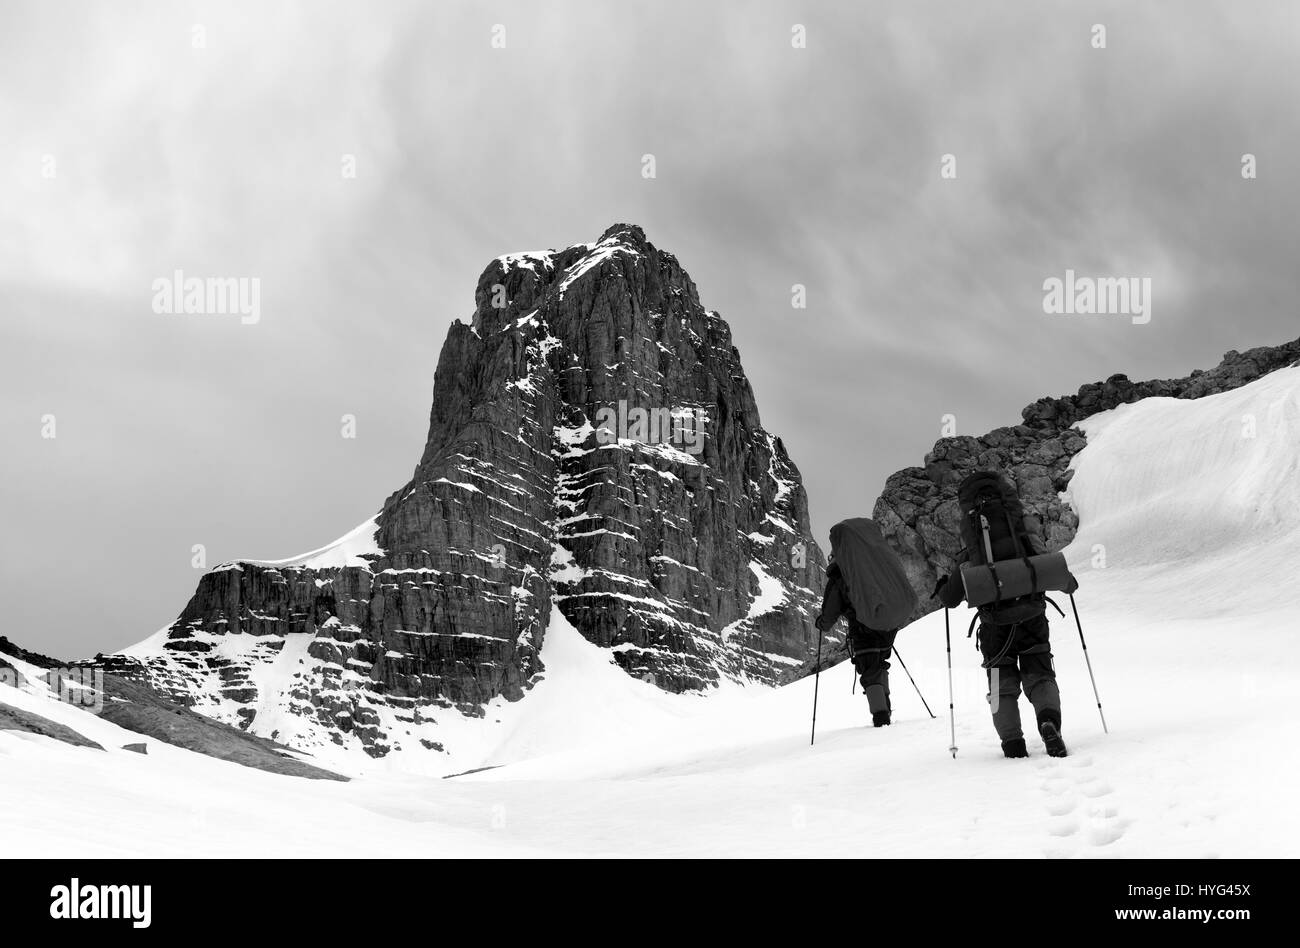 Deux randonneurs dans les montagnes enneigées avant tempête. La Turquie, Monts Taurus Aladaglar, centrale, le plateau Edigel (IJE Goller). Paysage aux tons noir et blanc Banque D'Images